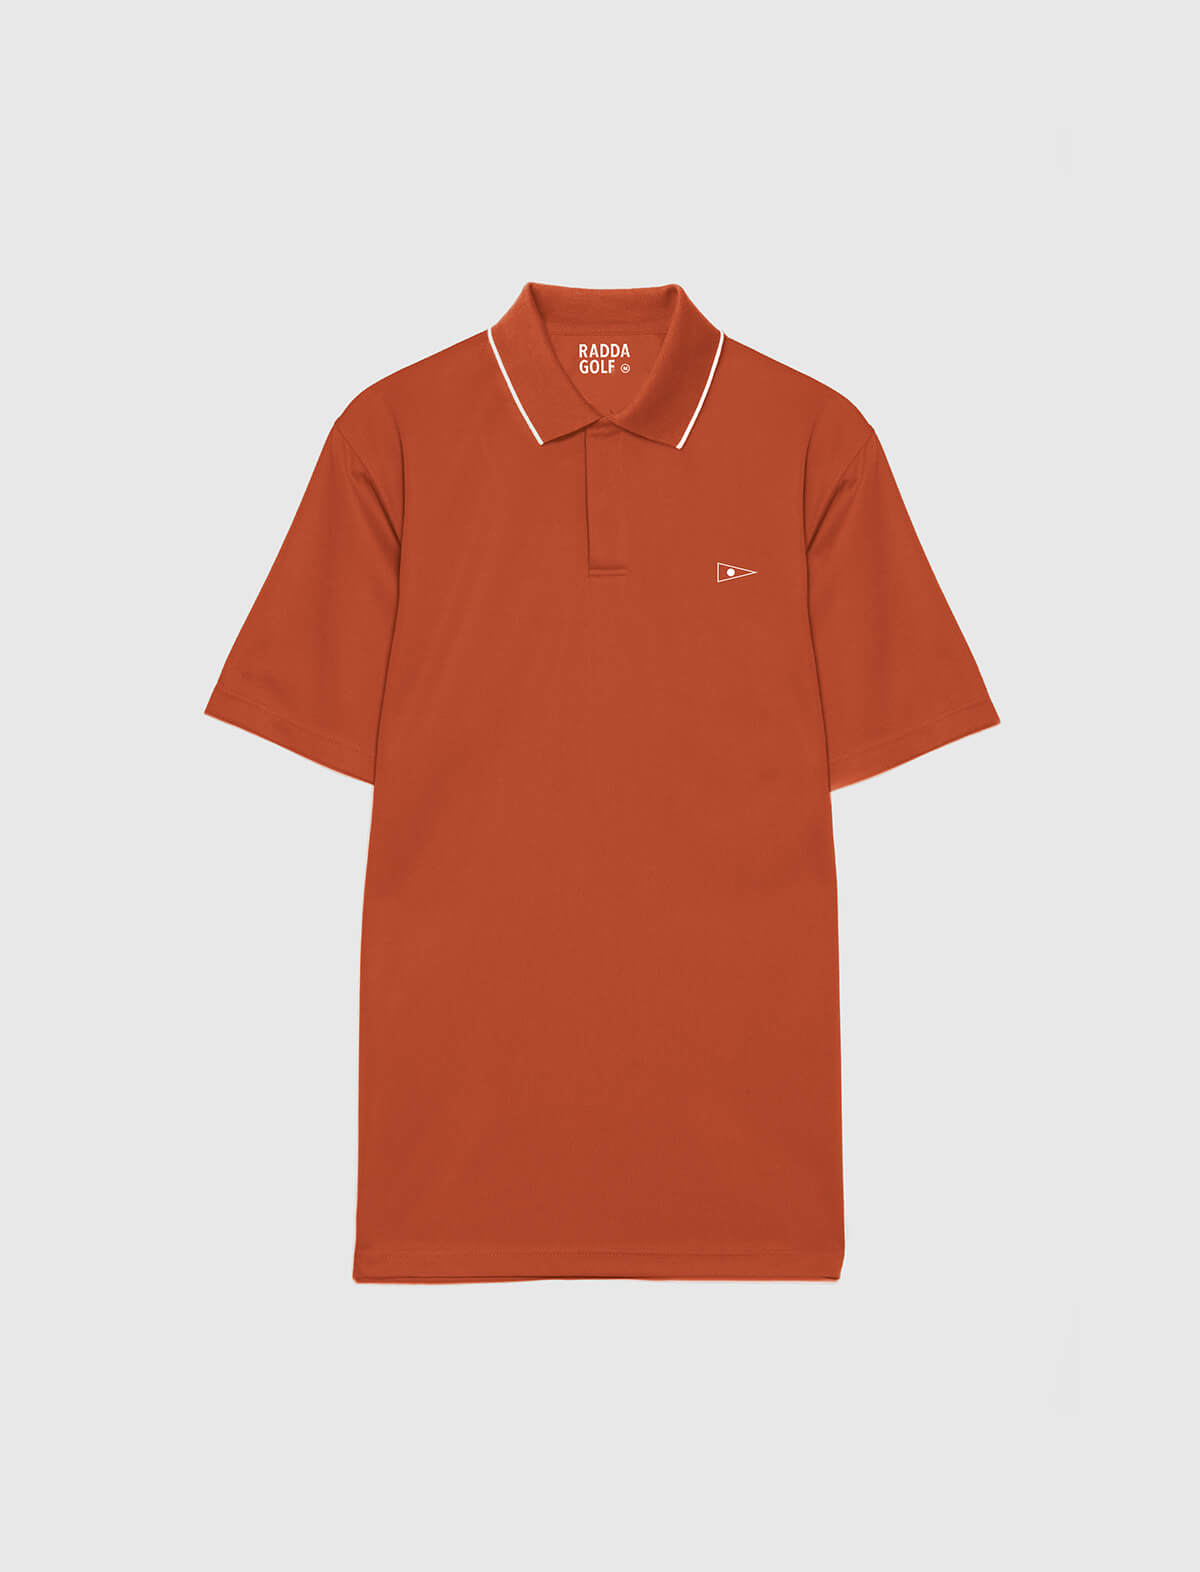 RADDA GOLF A-Ko Polo Shirt in Blood Orange